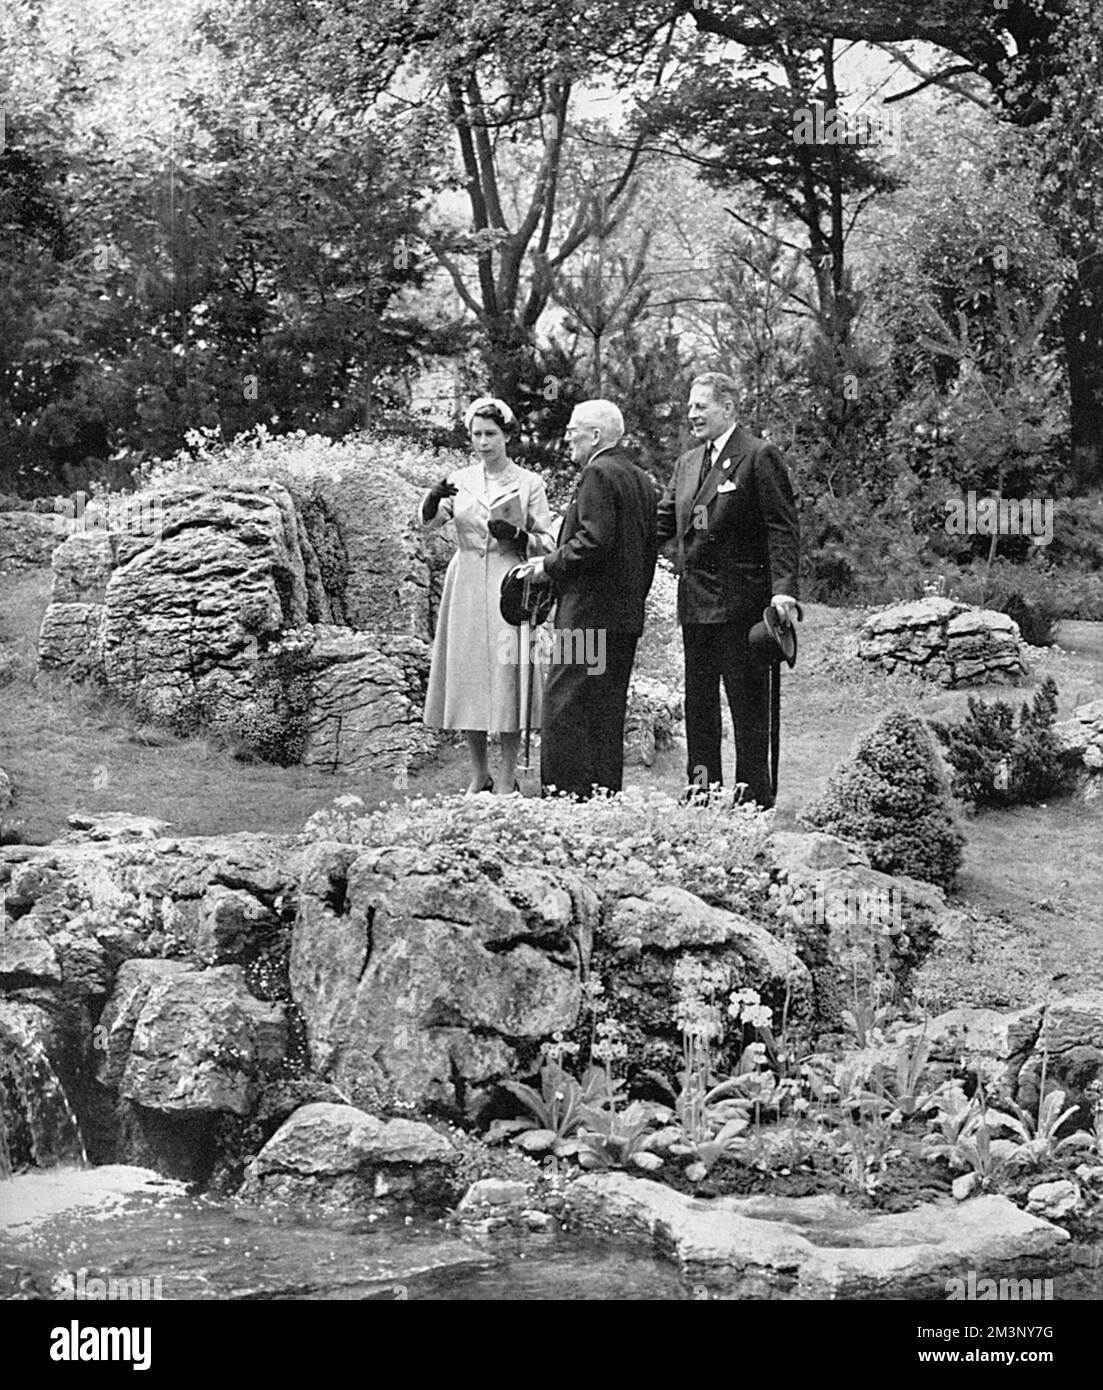 La Regina Elisabetta II visitò il Chelsea Flower Show nel 1955, ispezionando un giardino roccioso che ha attirato la sua attenzione. È condotta intorno all'esposizione dal suo zio materno, l'on. David Bowes-Lyon. Data: 1955 Foto Stock